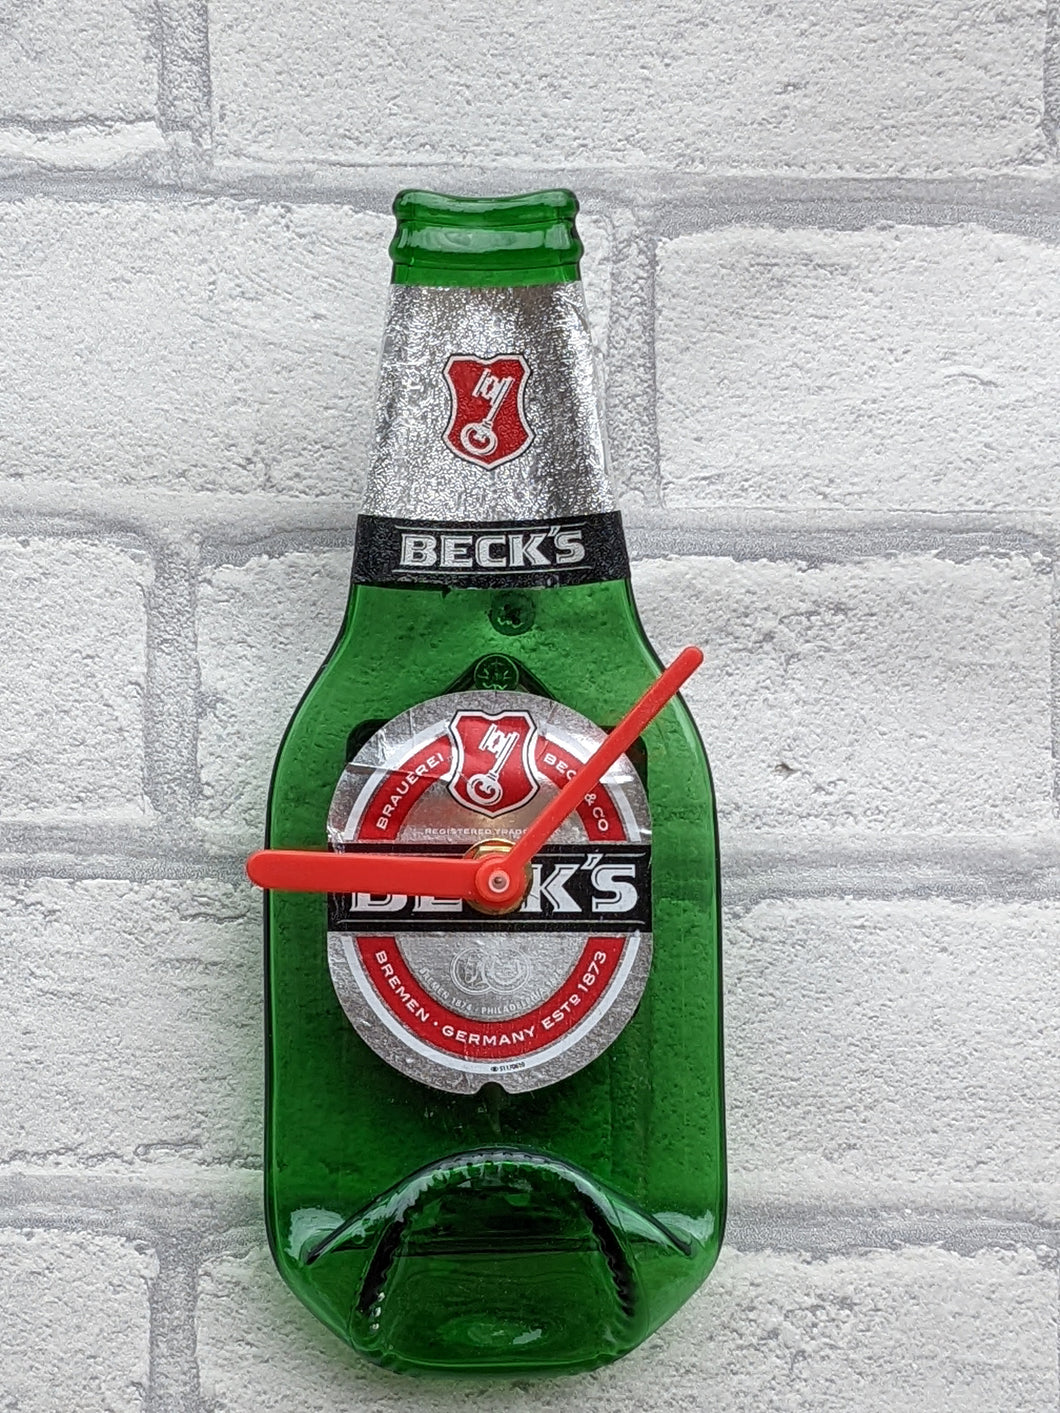 Becks beer bottle clock